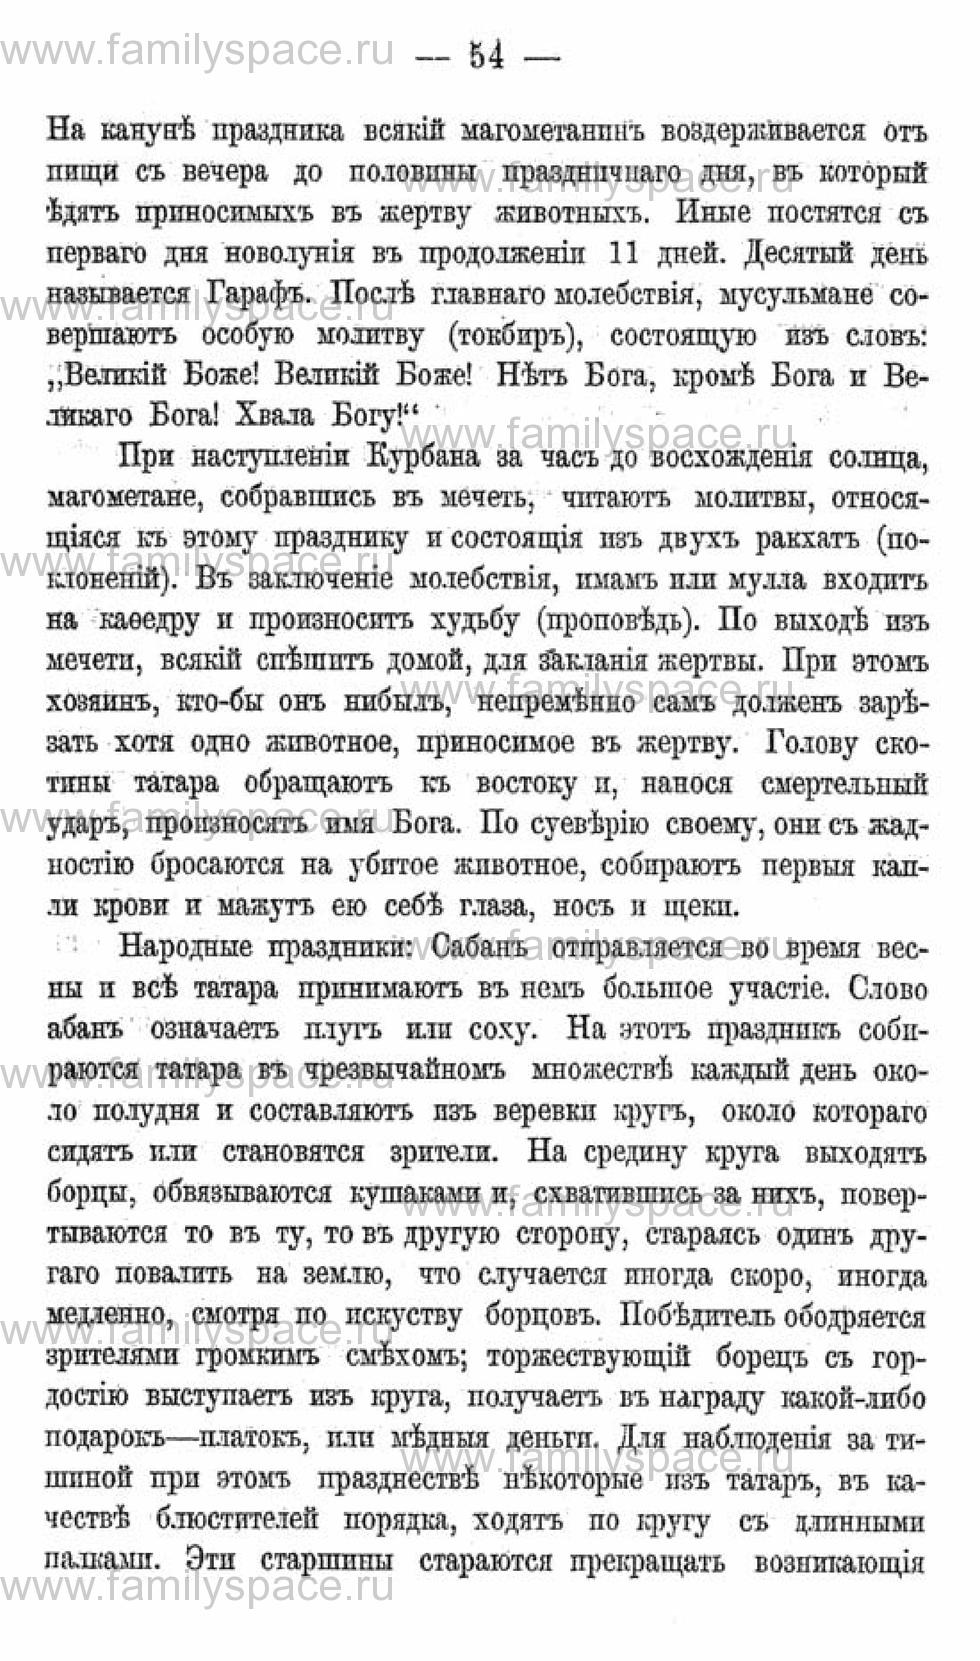 Поиск по фамилии - Календарь Вятской губернии - 1880, страница 2054